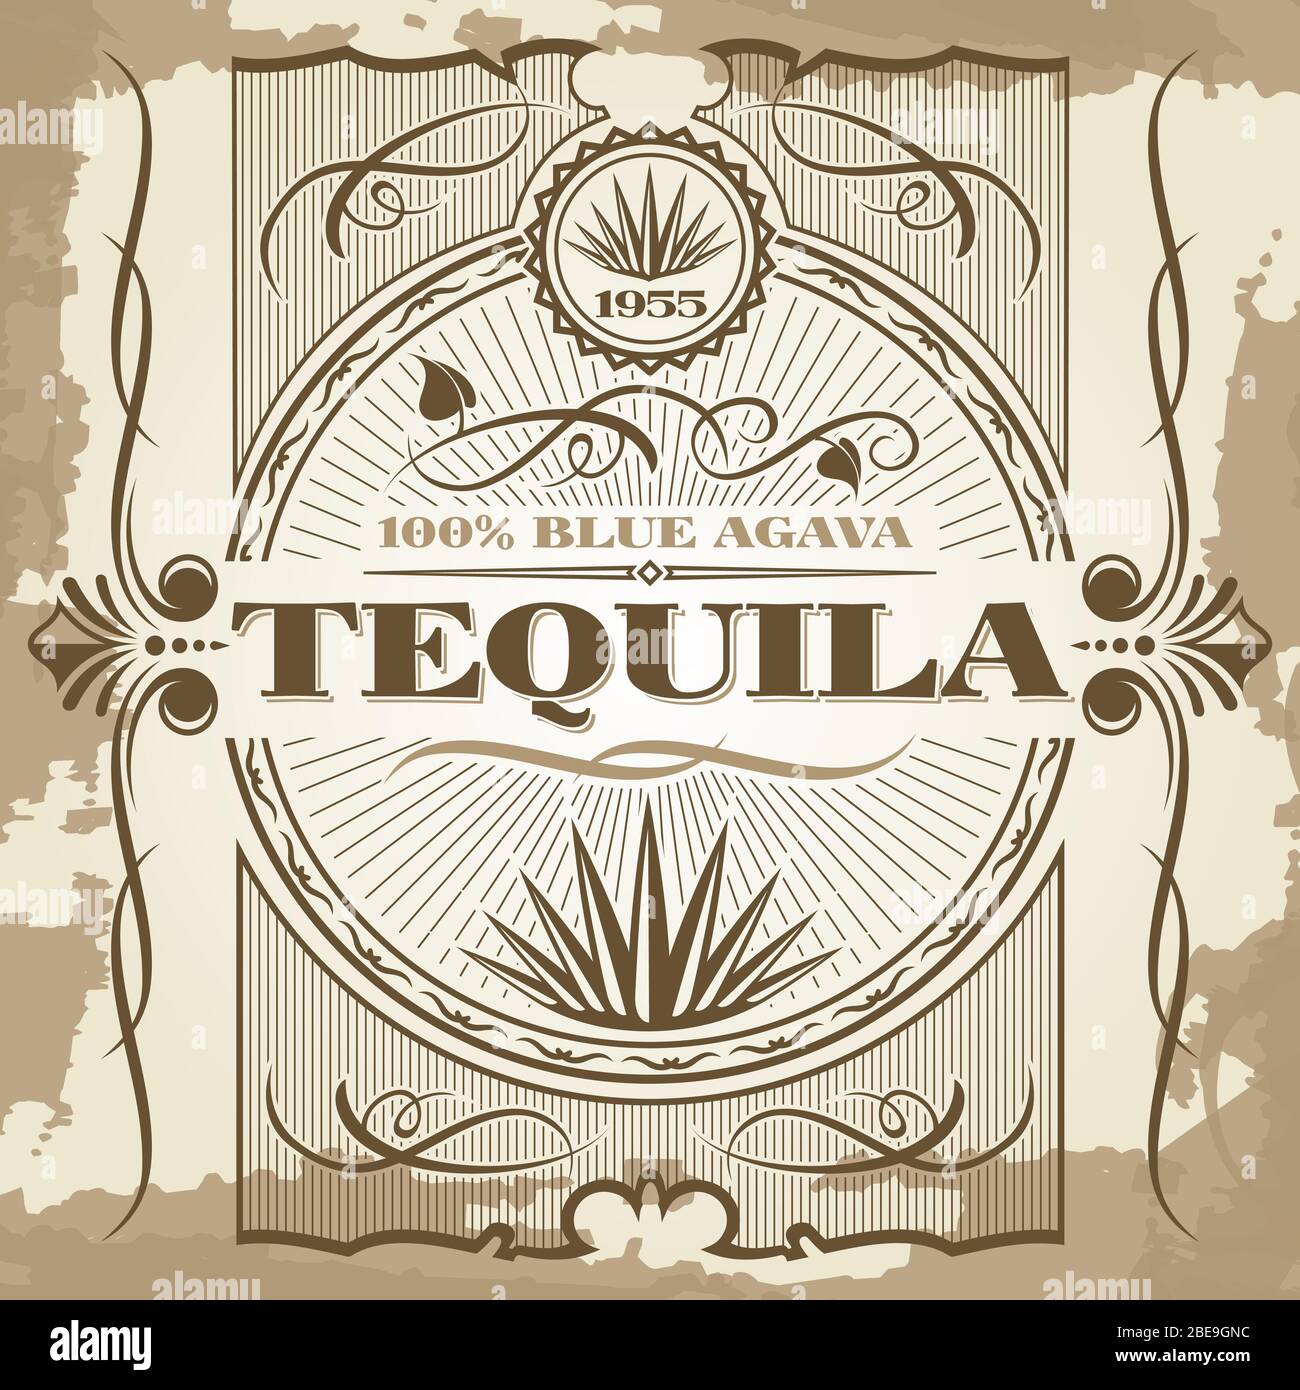 Vintage tequila poster design vettoriale. Stile di illustrazione retrò della barra di intestazione Illustrazione Vettoriale